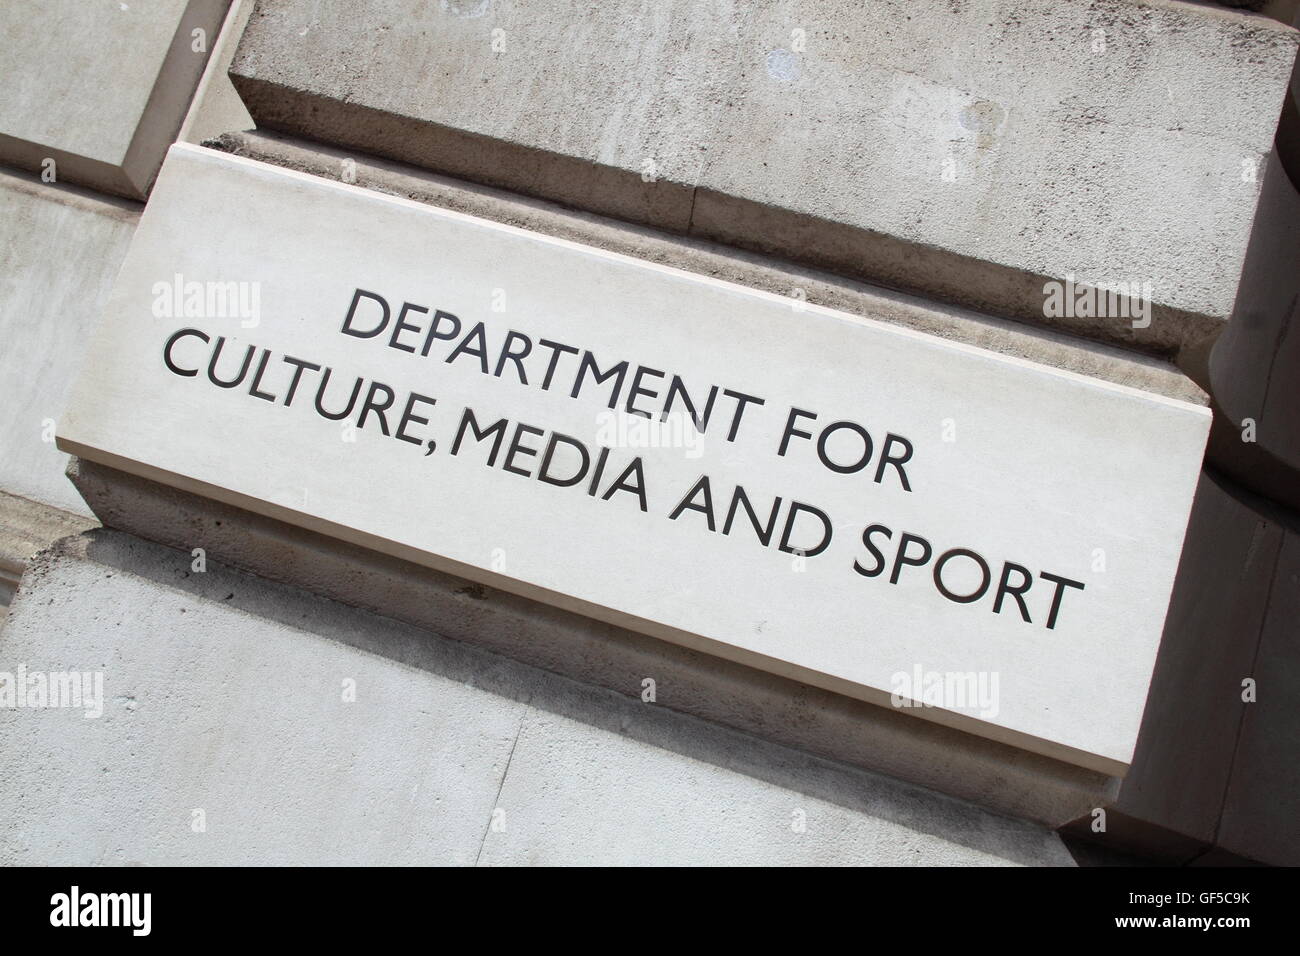 Ministère de la culture des médias et des sports, le Parlement Street, Londres, Angleterre, Grande-Bretagne, Royaume-Uni, UK, Europe Banque D'Images